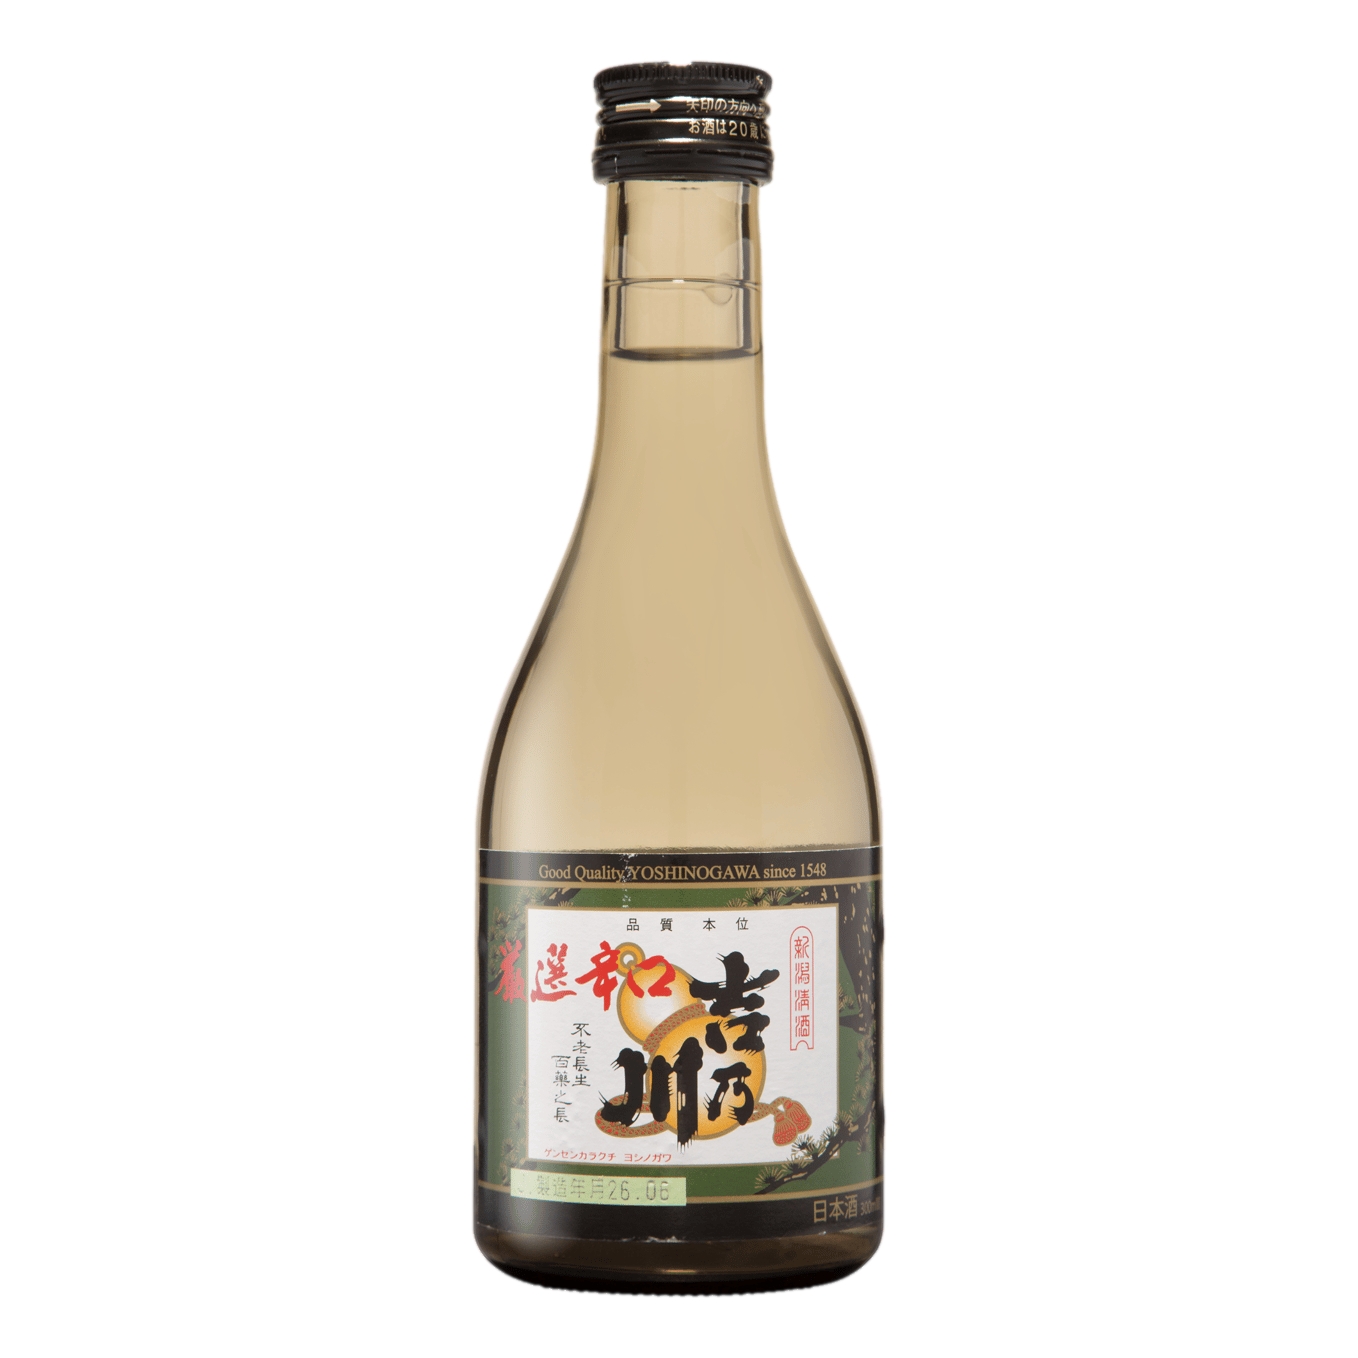 Yoshinogawa Gensen Karakuchi Sake 300ml